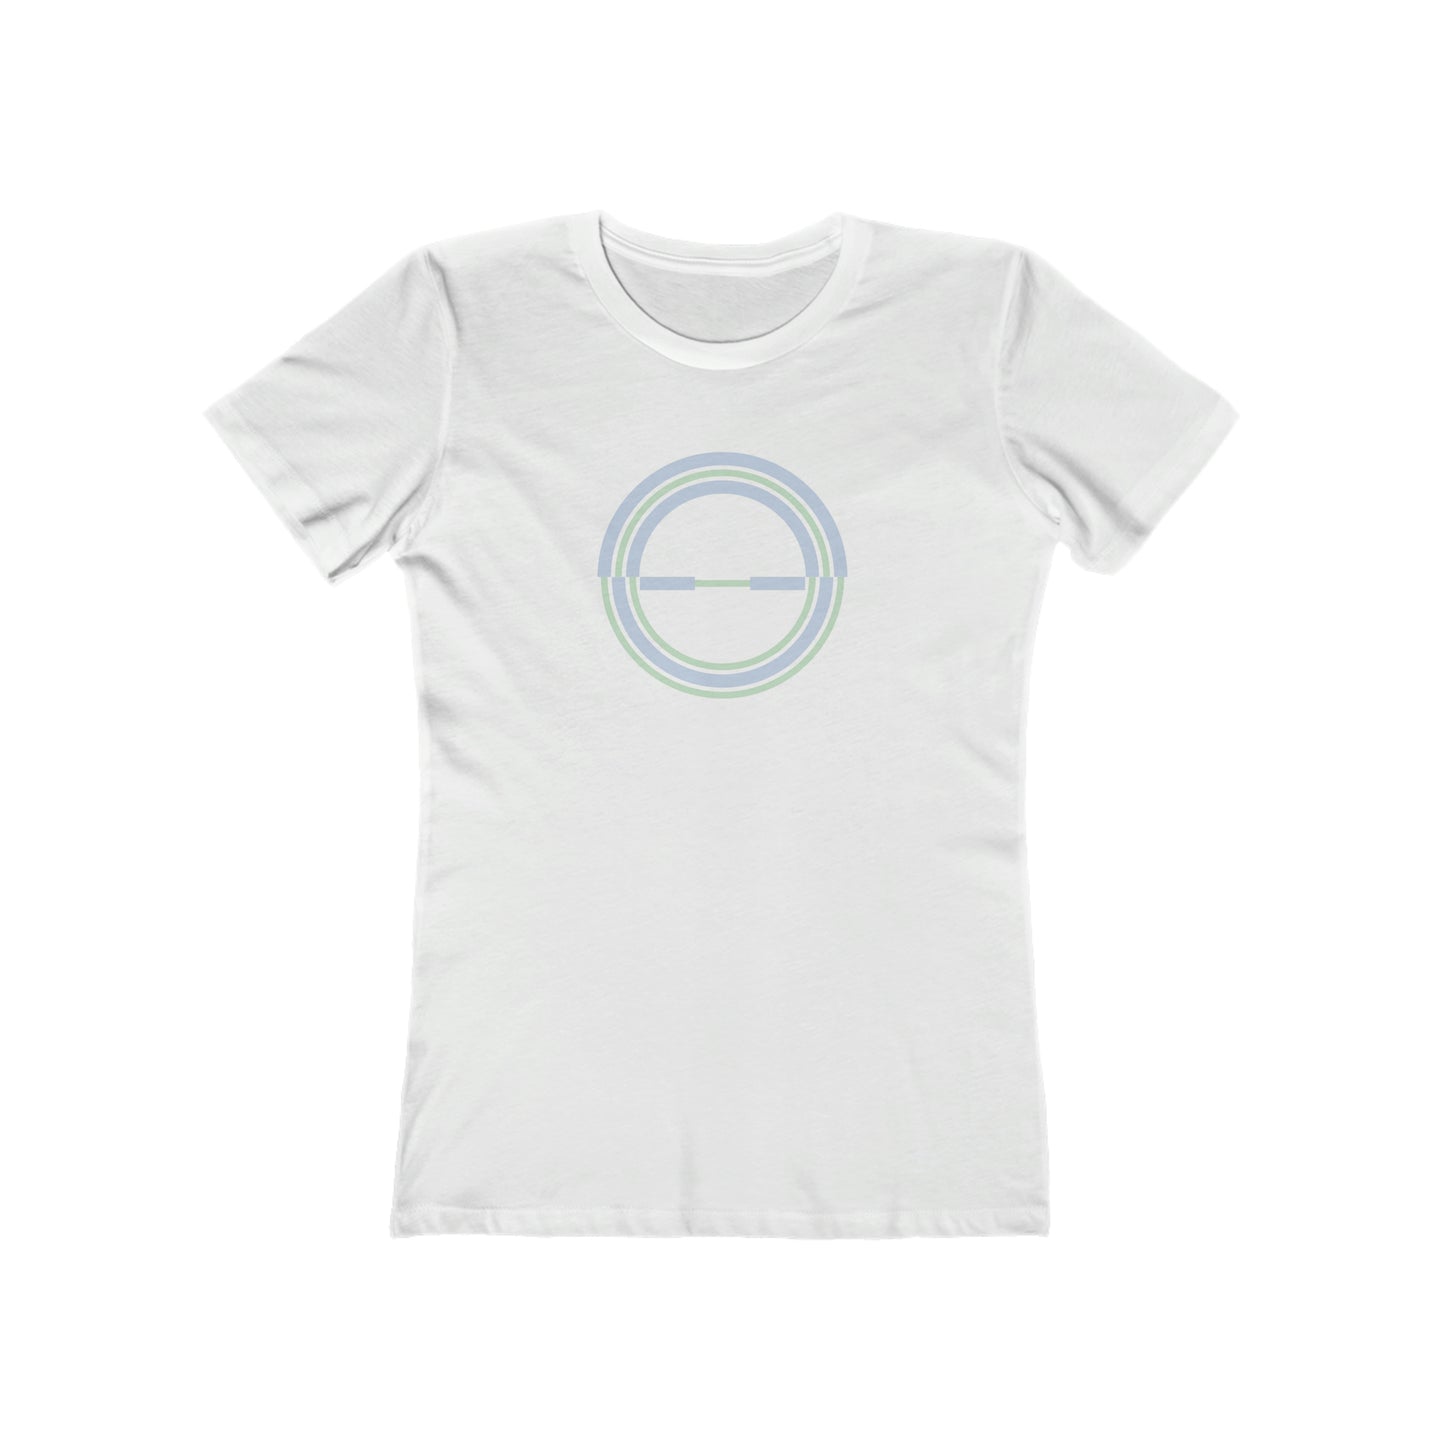 Uneven Rings - Women's T-Shirt